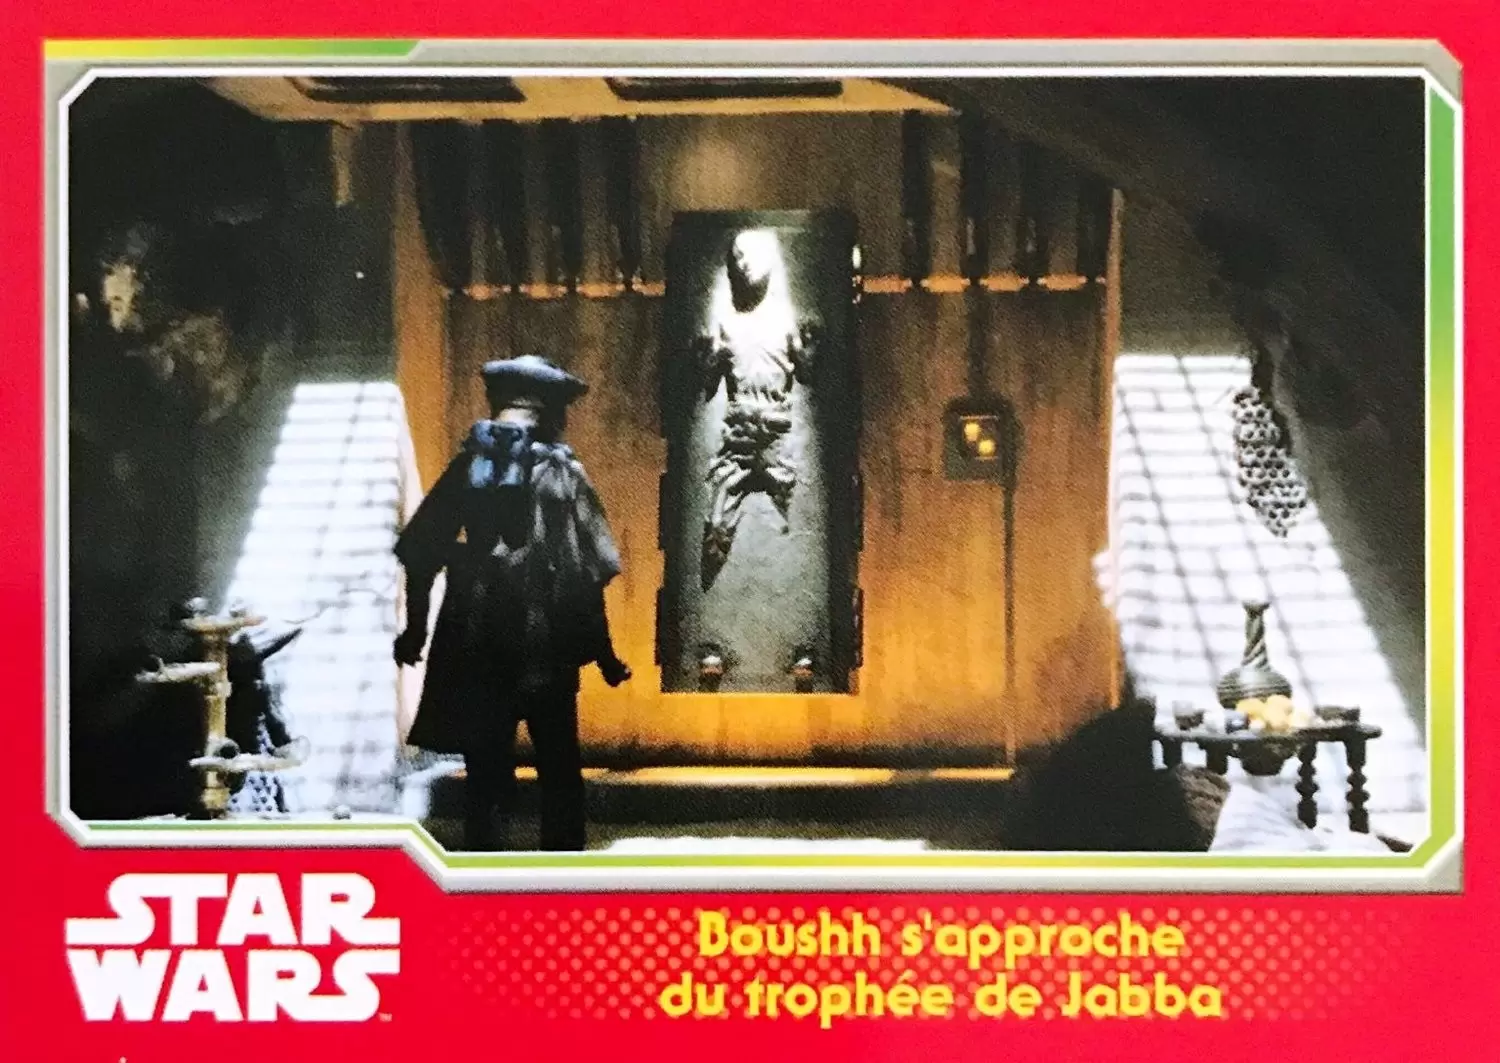 Topps - Voyage vers Star Wars : Le réveil de la force - Boushh s\'approche du trophée de Jabba